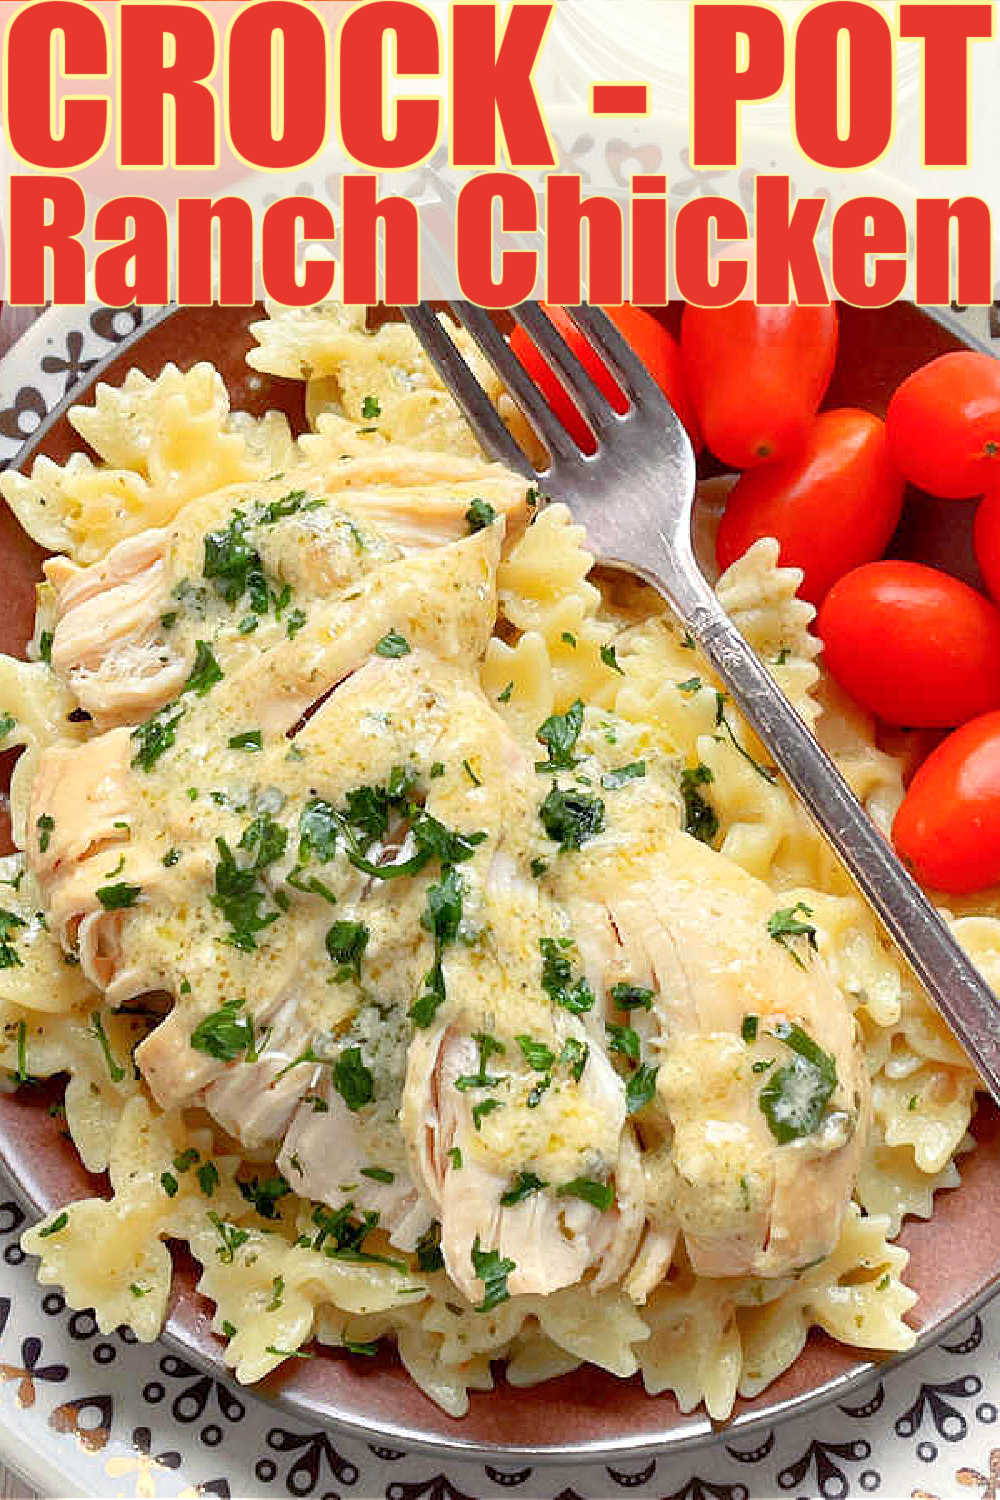 Crock-Pot Ranch Chicken | Foodtastic Mom #crockpotrecipes #slowcookerrecipes #chickenrecipes #crockpotranchchicken via @foodtasticmom